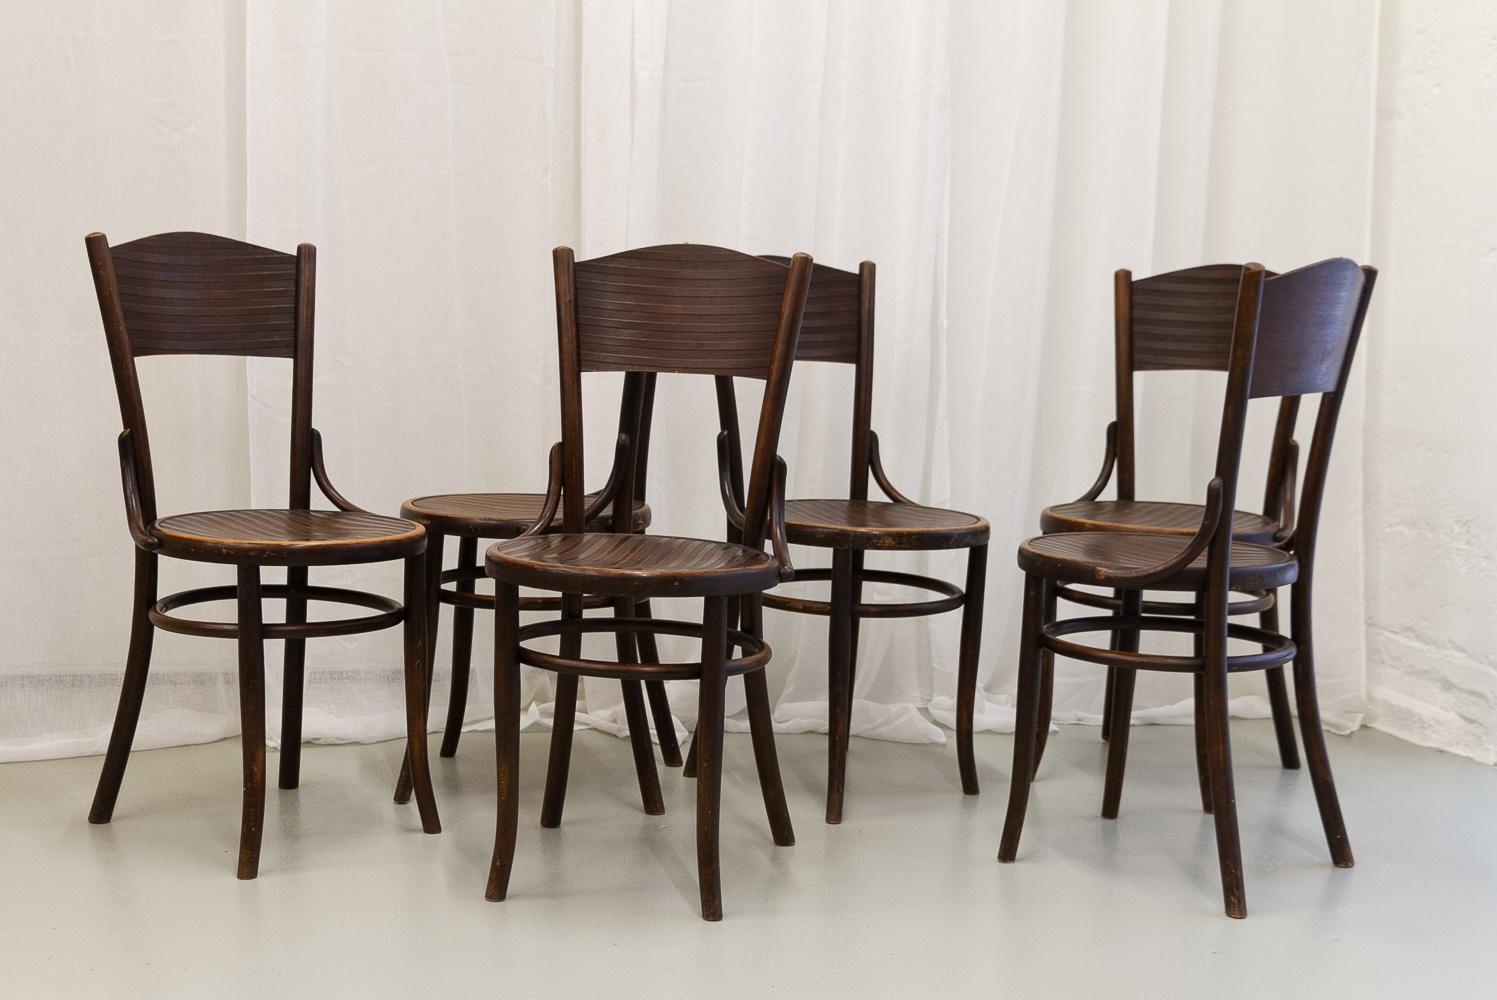 Chaises de bistrot vintage en bois de Fischel, années 1920. Ensemble de 6.
Ensemble de six chaises de salle à manger Fischel Vienna en bois courbé avec motif rayé sur l'assise et le dossier.
Ces chaises de café Art nouveau, modèle 45, ont été